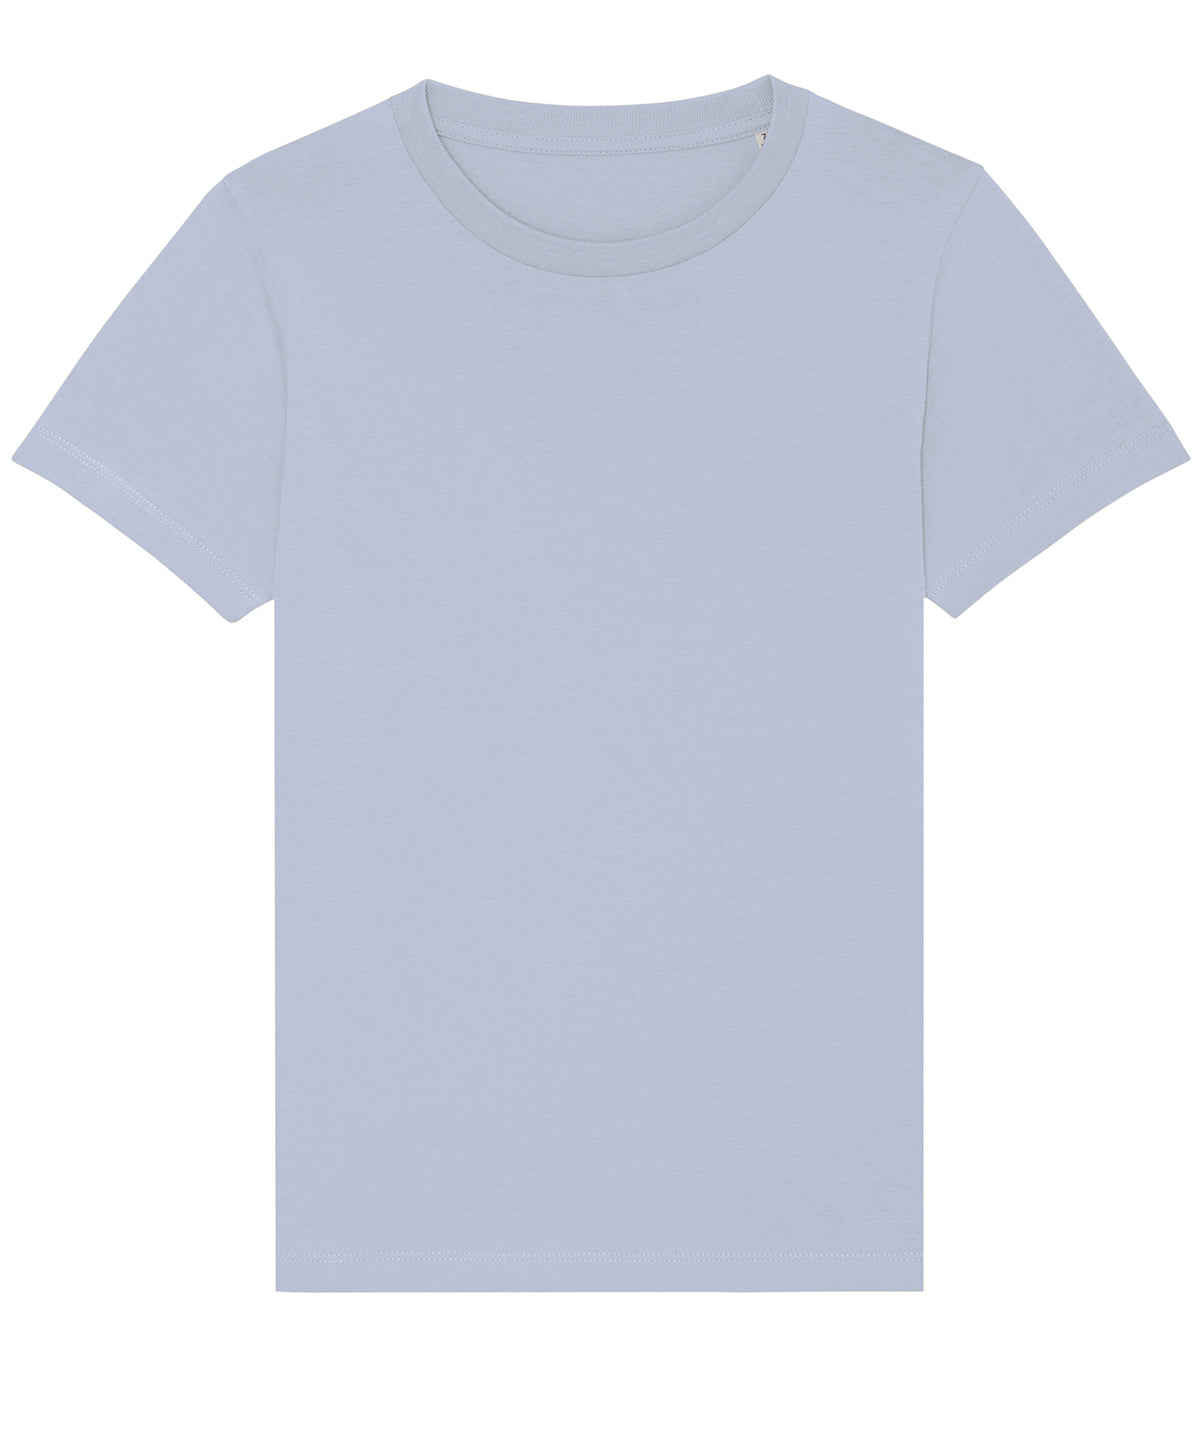 Personalised Organic Cotton Toddler T Shirt